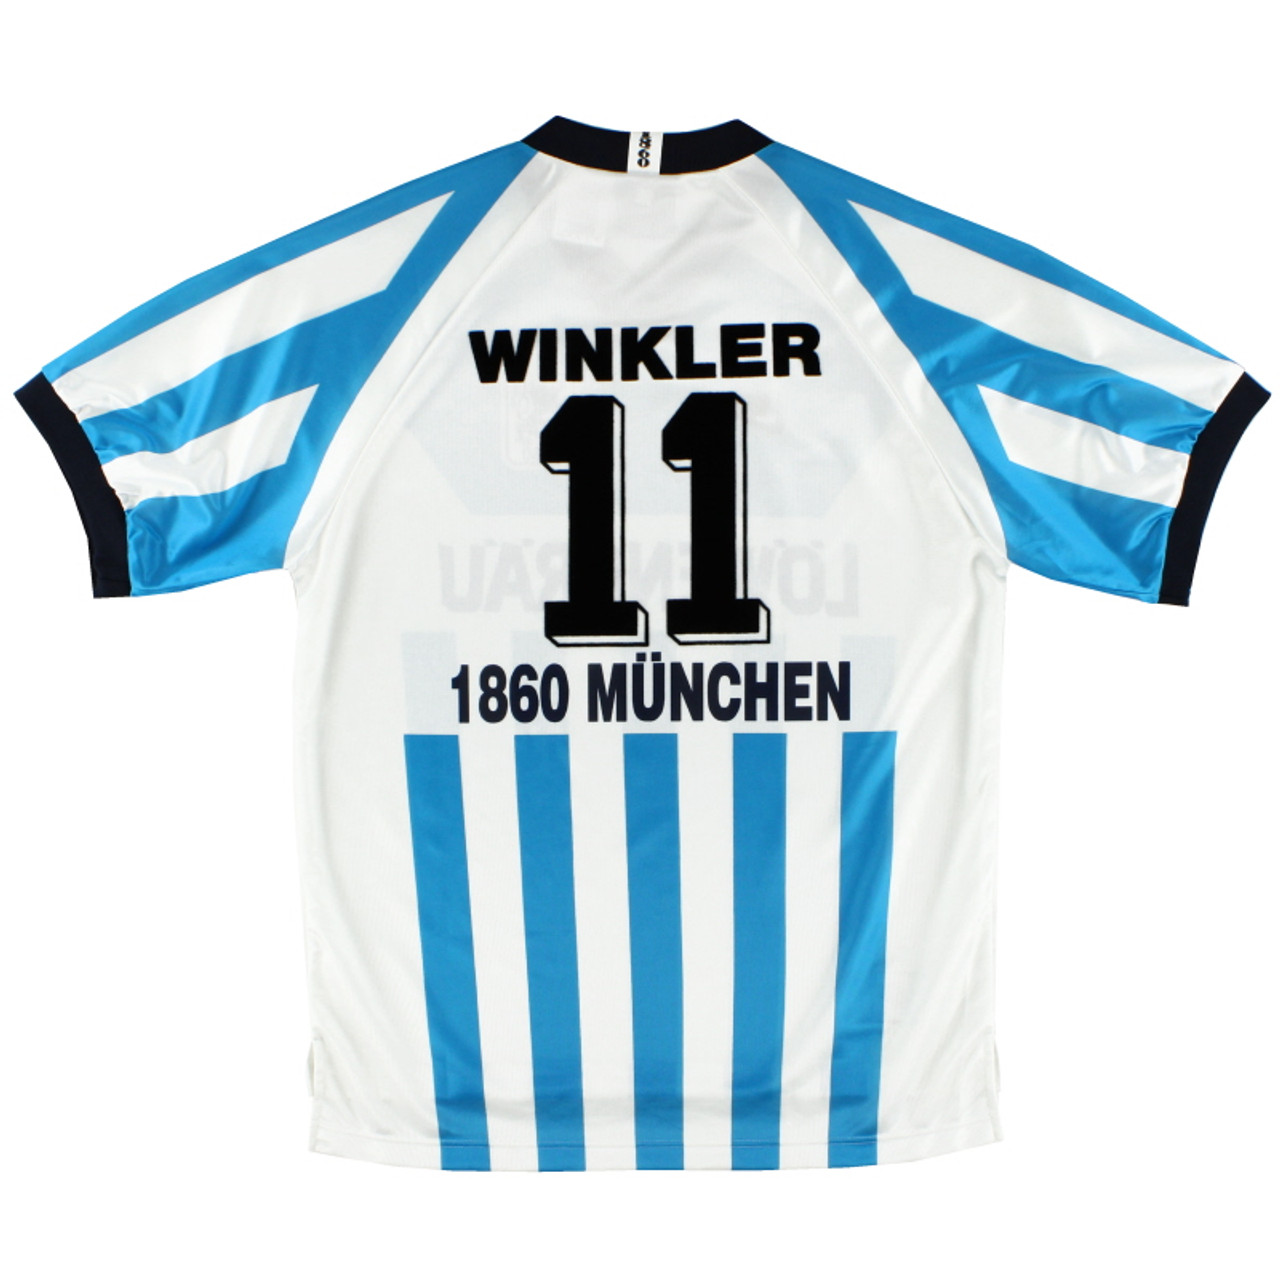 NIKE 1860 MUNICH 1997 WINKLER JERSEY - Soccer Plus